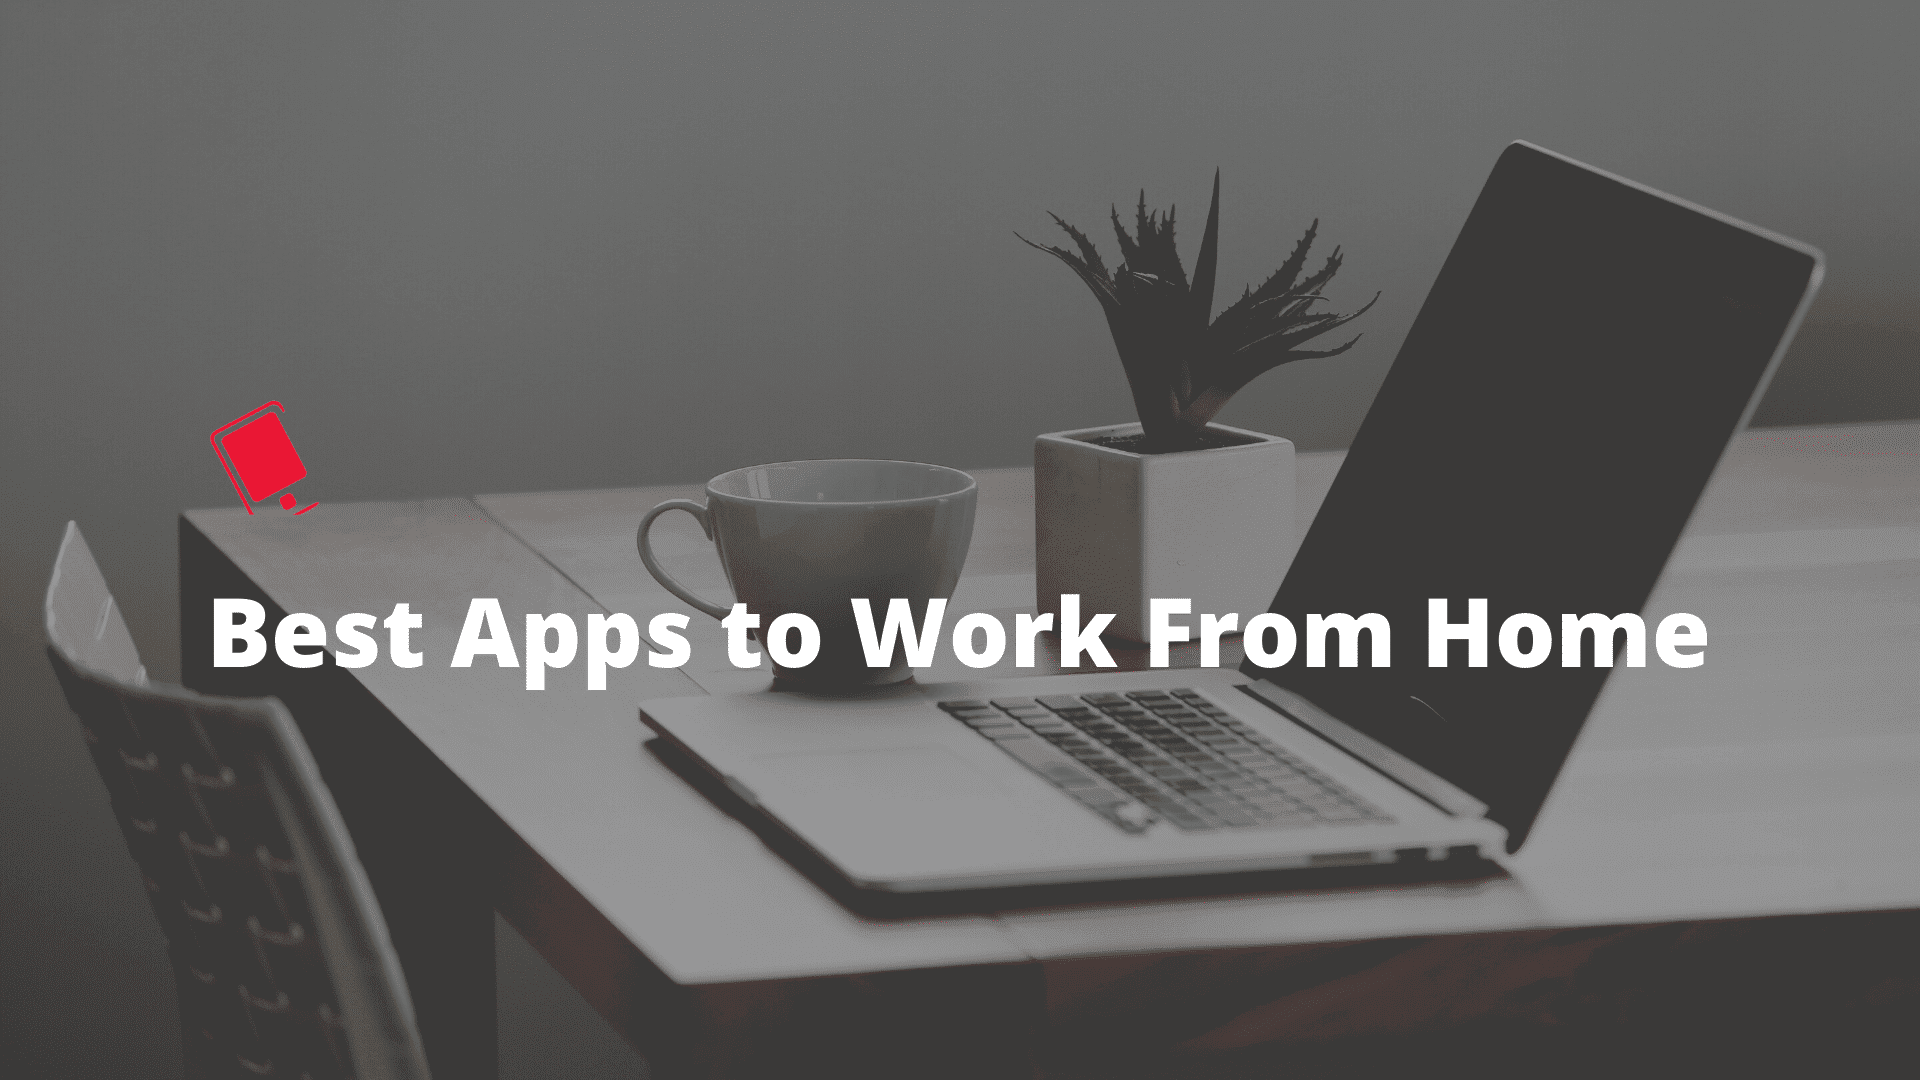 Die besten Work-from-Home-Apps und -Dienste, um die Arbeit aus der Ferne zu erleichtern 42